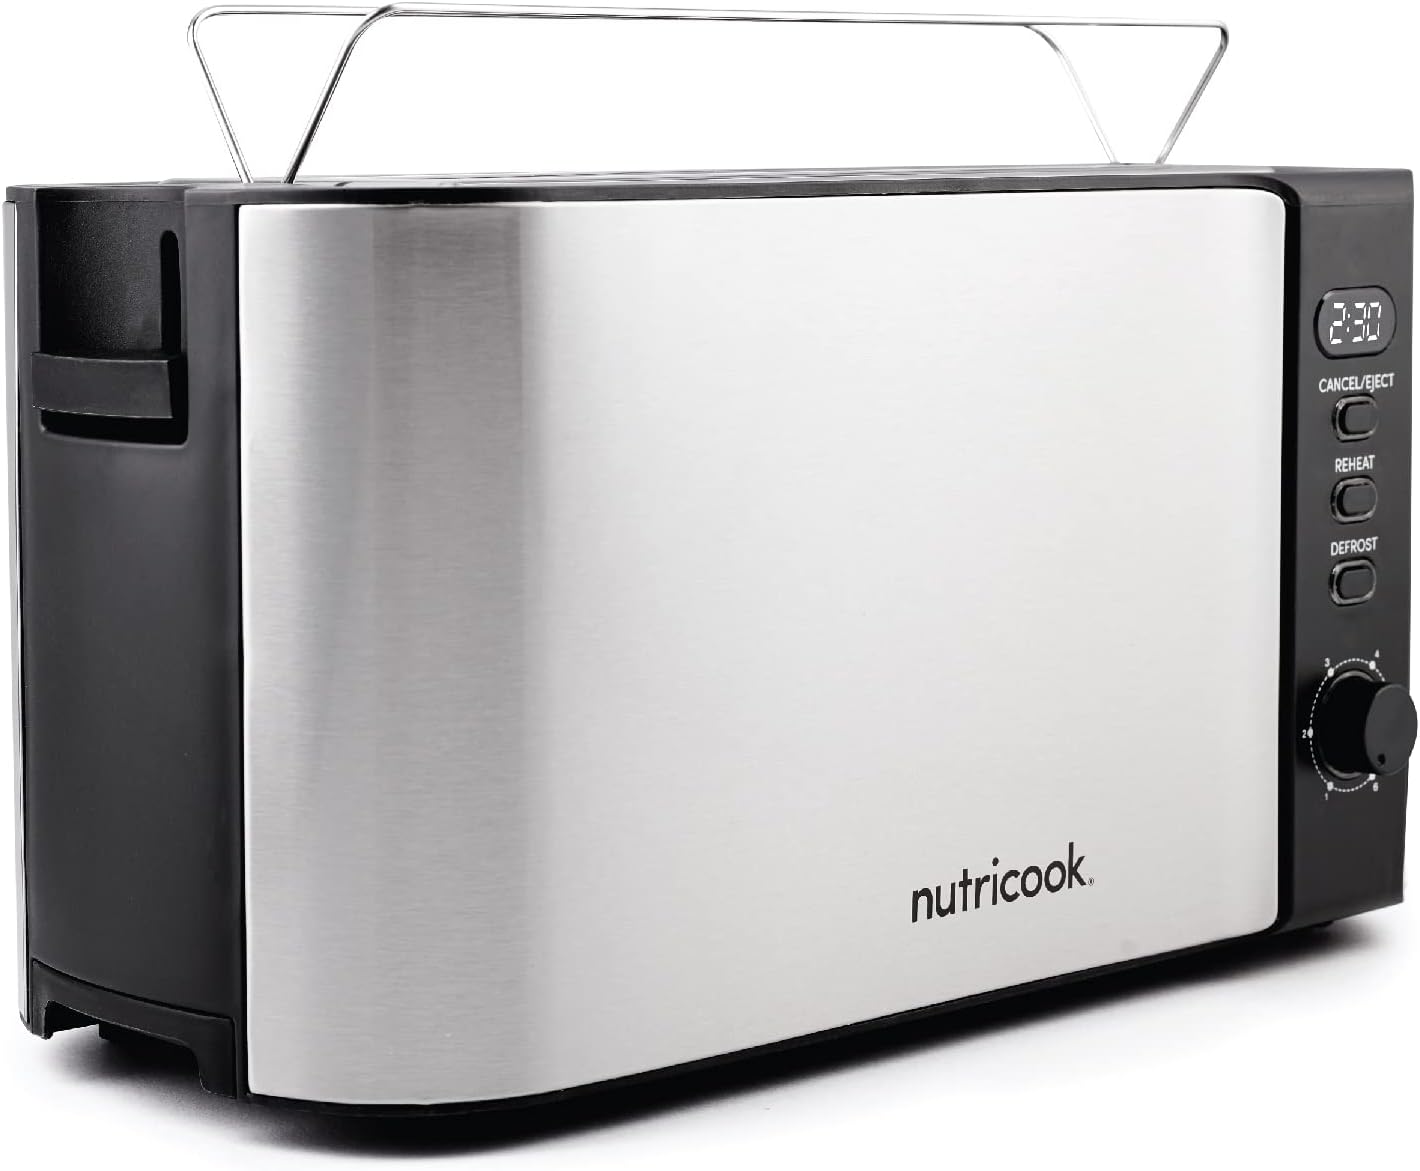 Nutricook 4 Slice Stainless Steel LED Digital Toaster, 1500 Watt - Silver